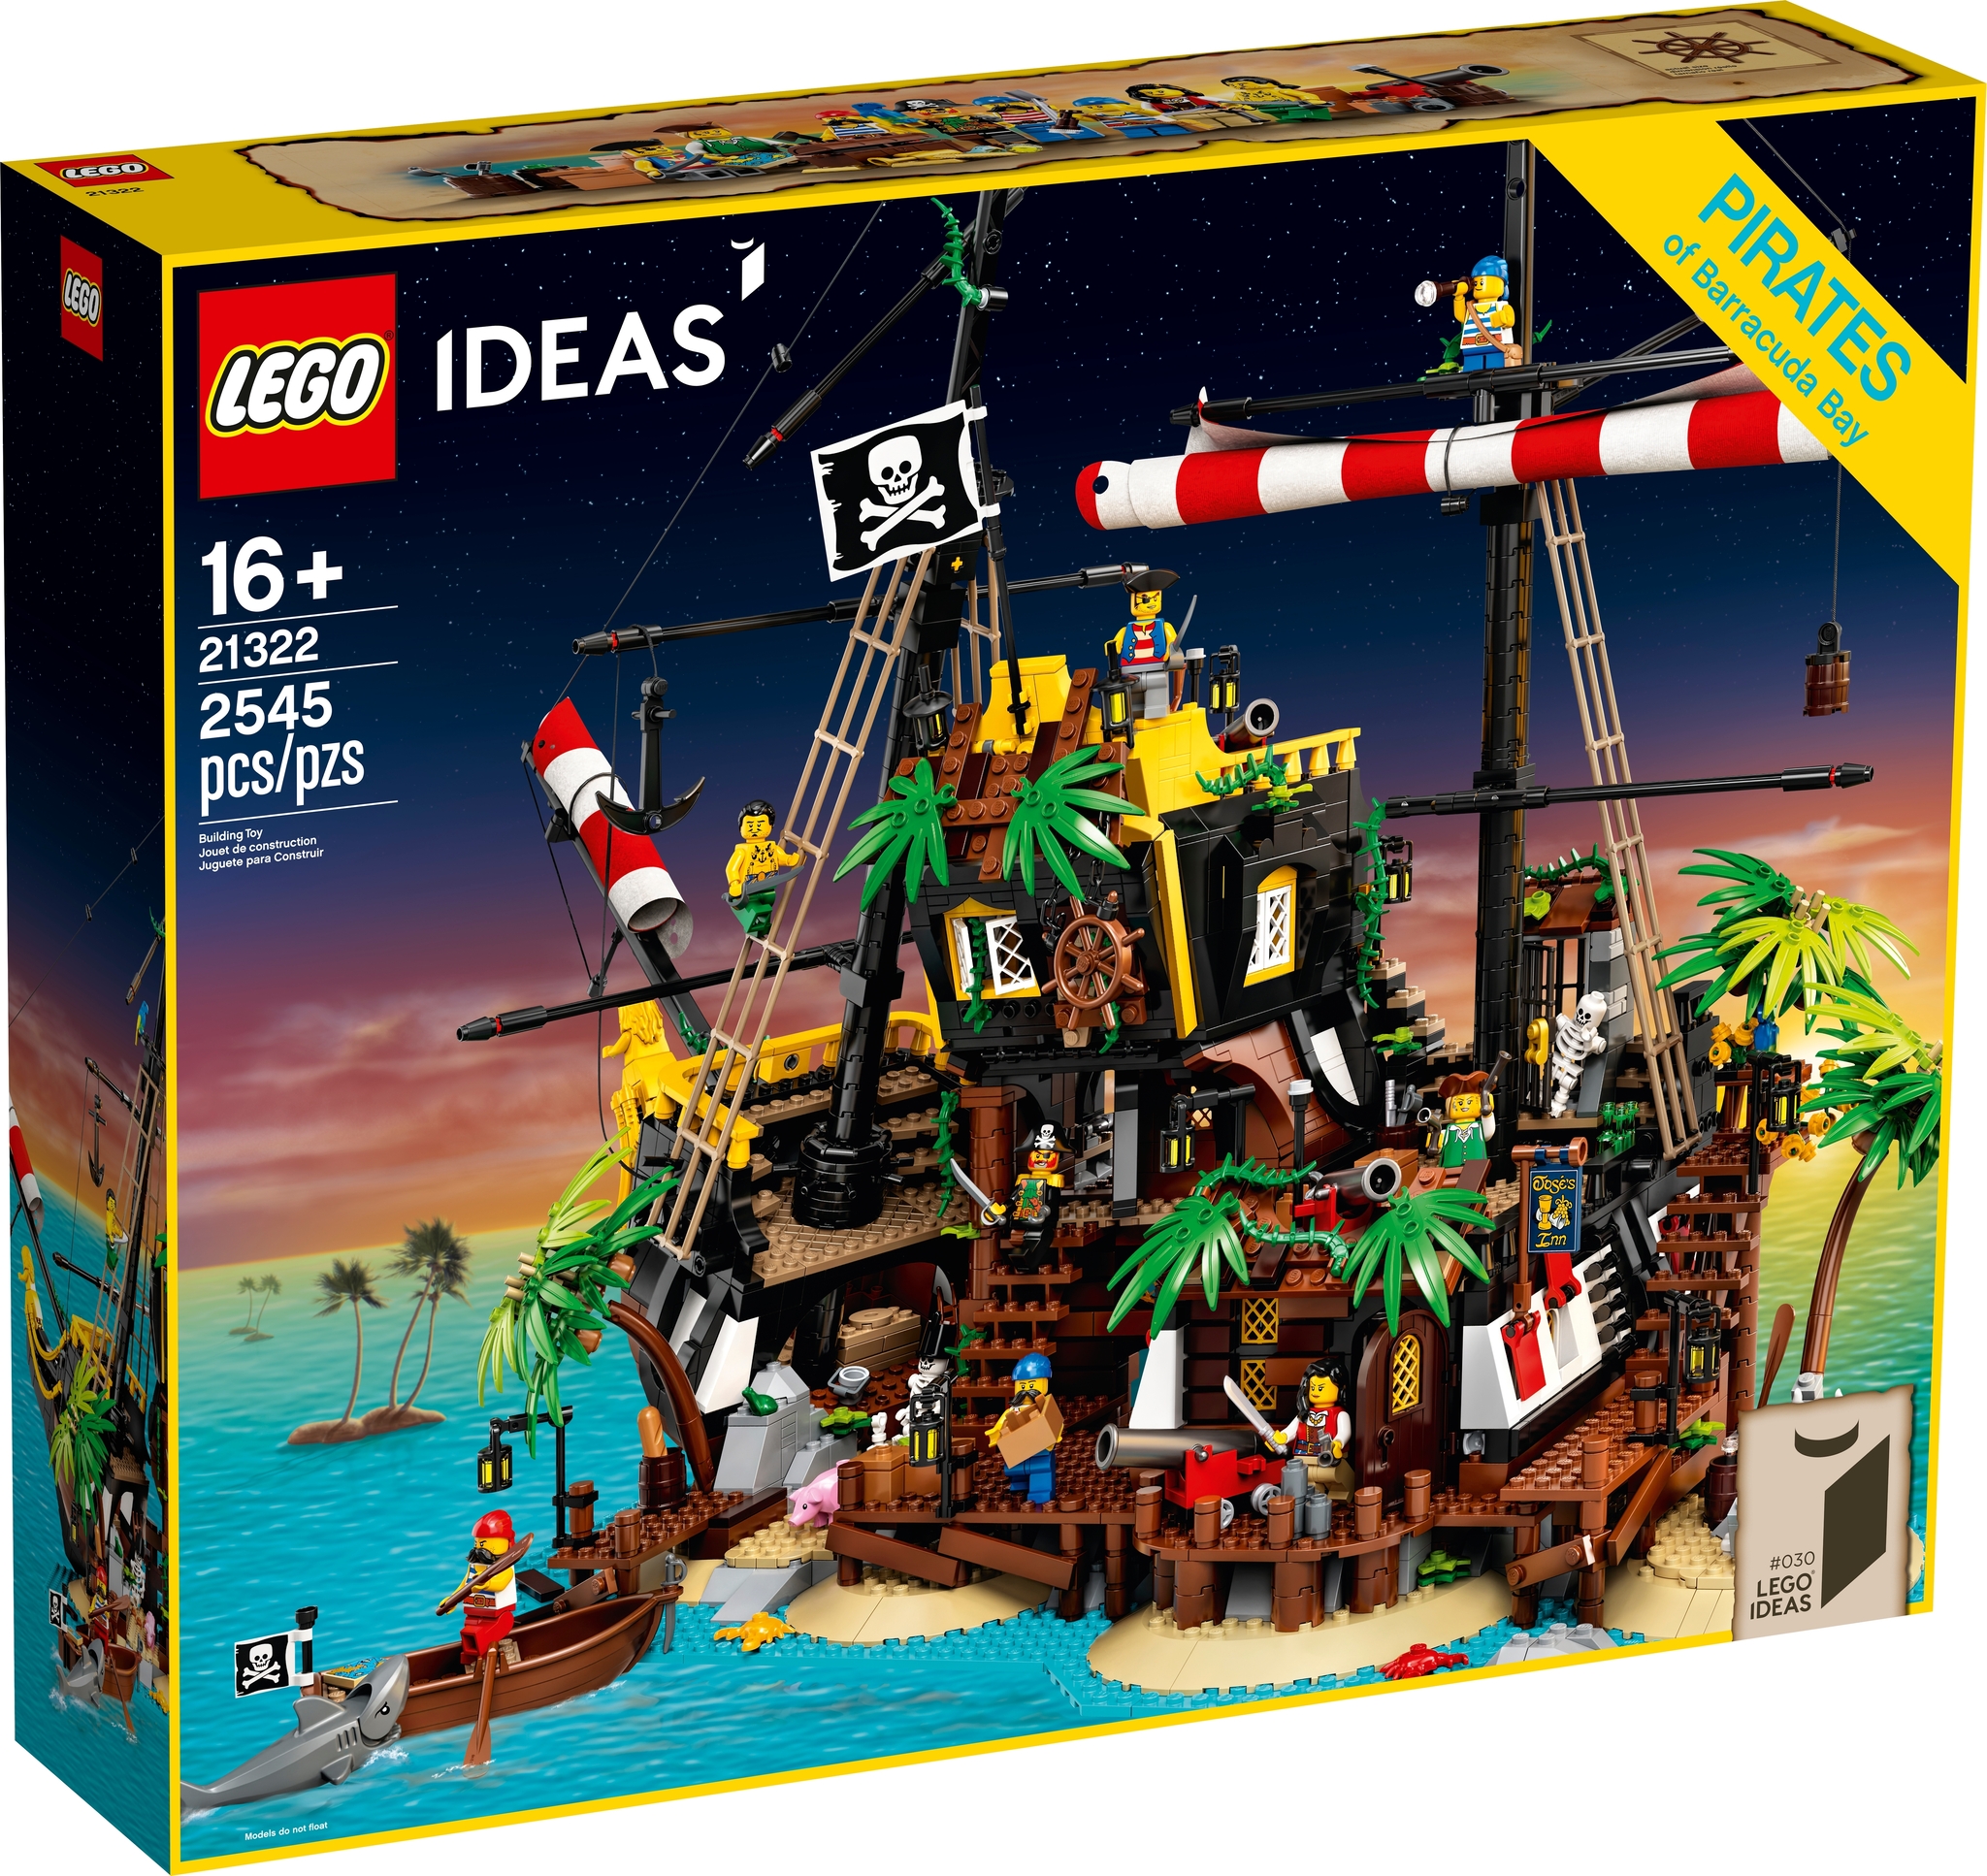 LEGO Ideas 21322 - I Pirati di Barracuda Bay